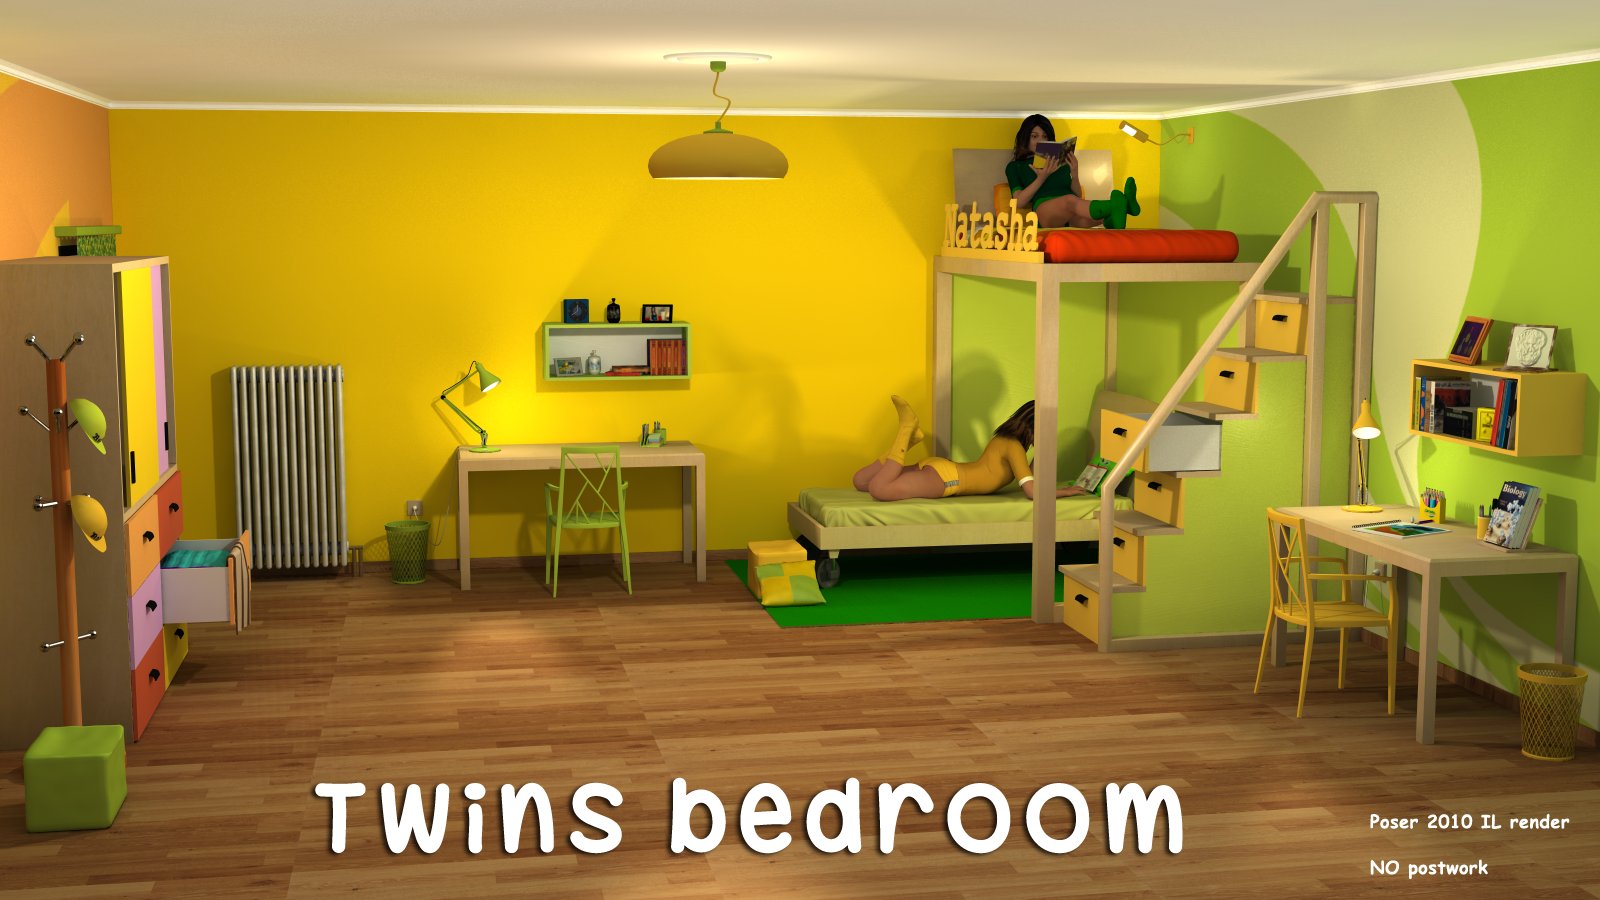 Twins bedroom